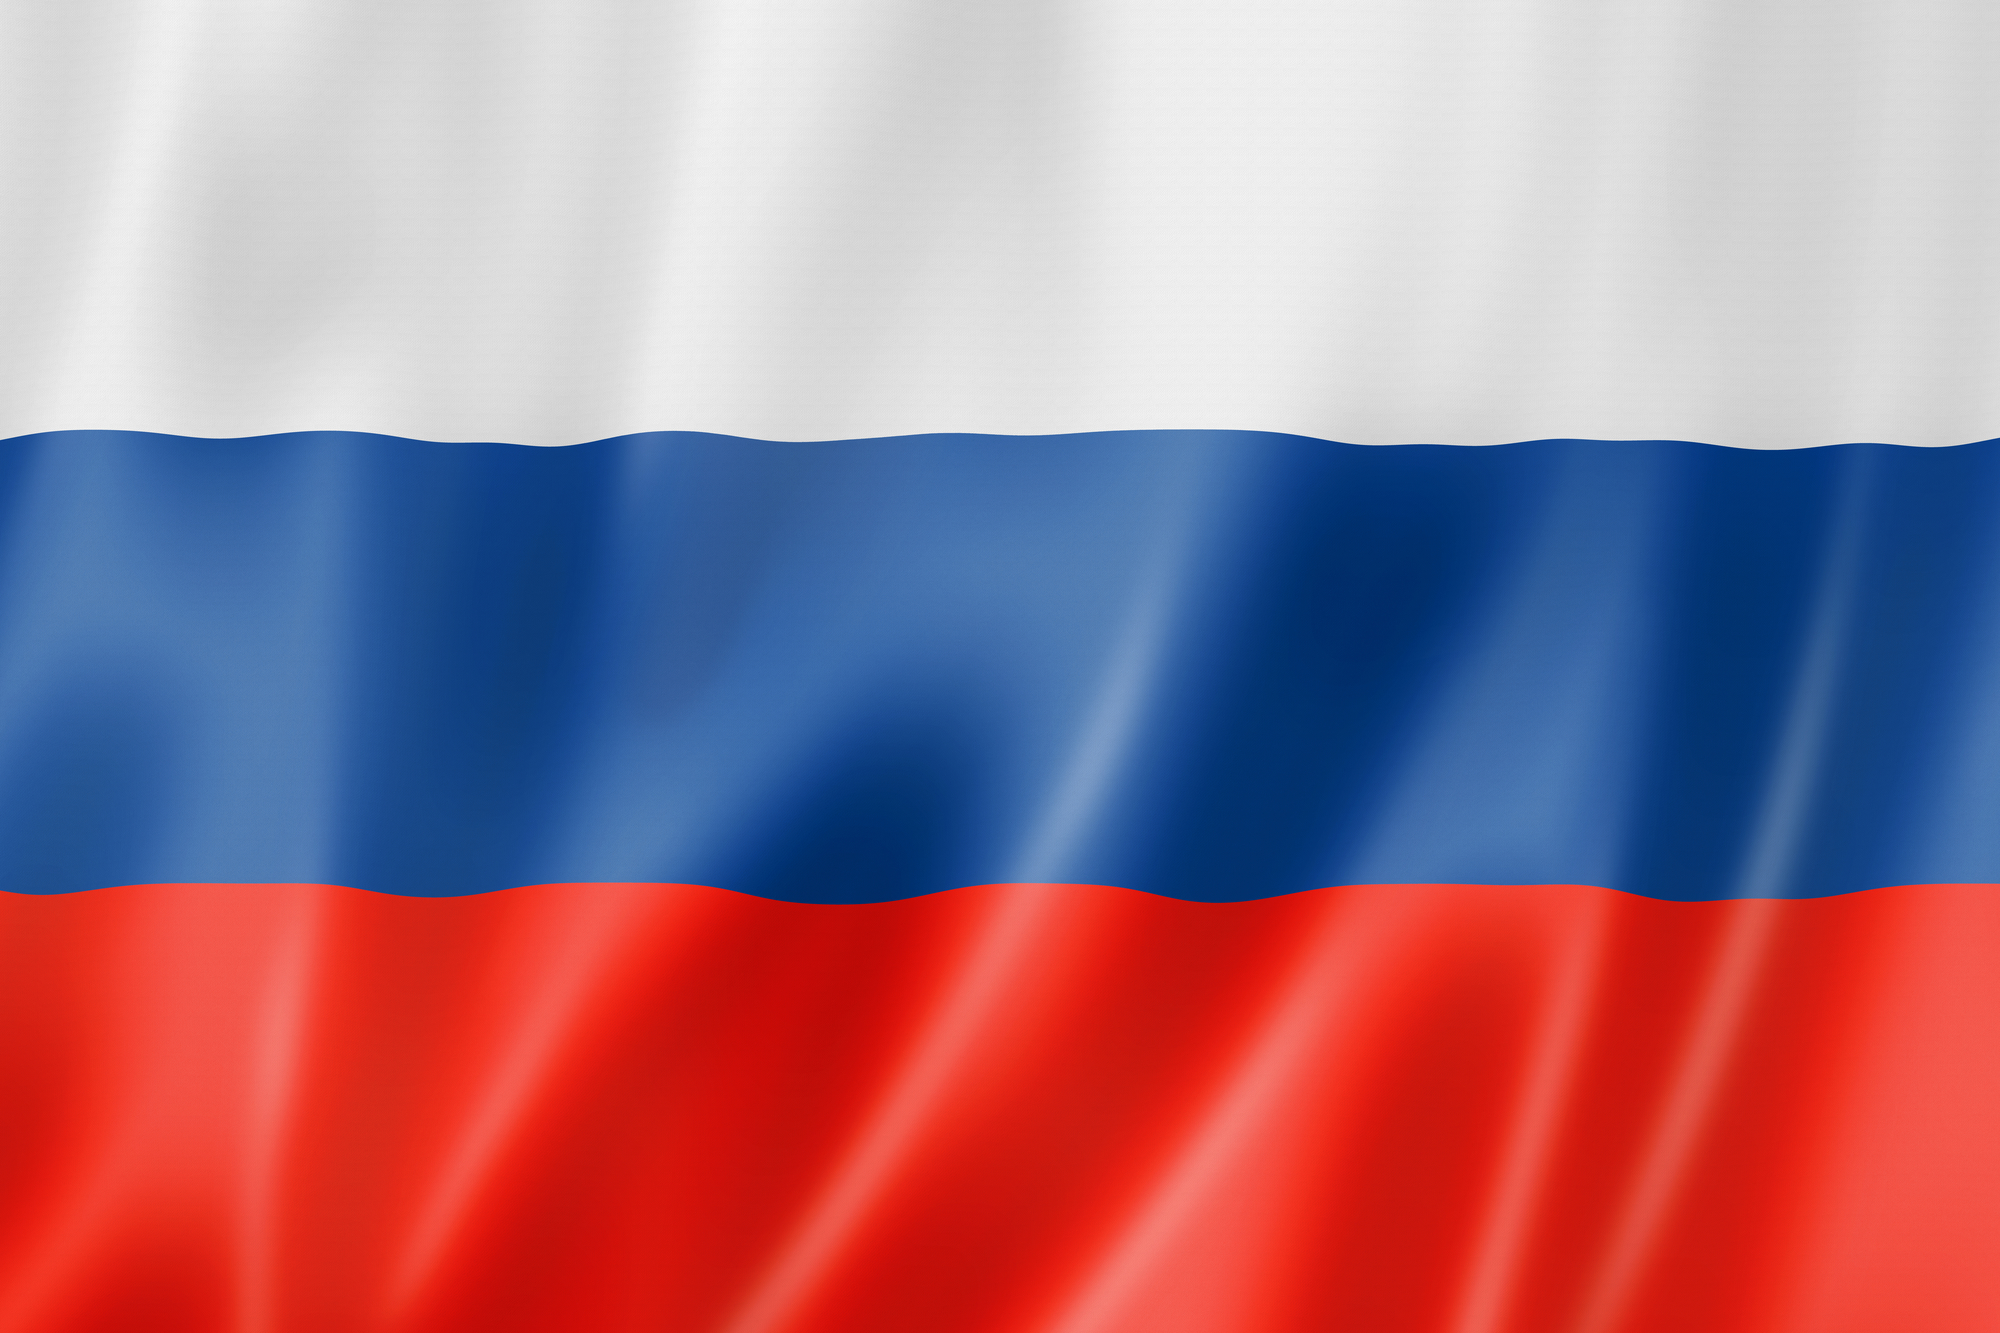 Oroszország visszakapja szavazati jogát az Európa Tanács Parlamenti Közgyűlésében